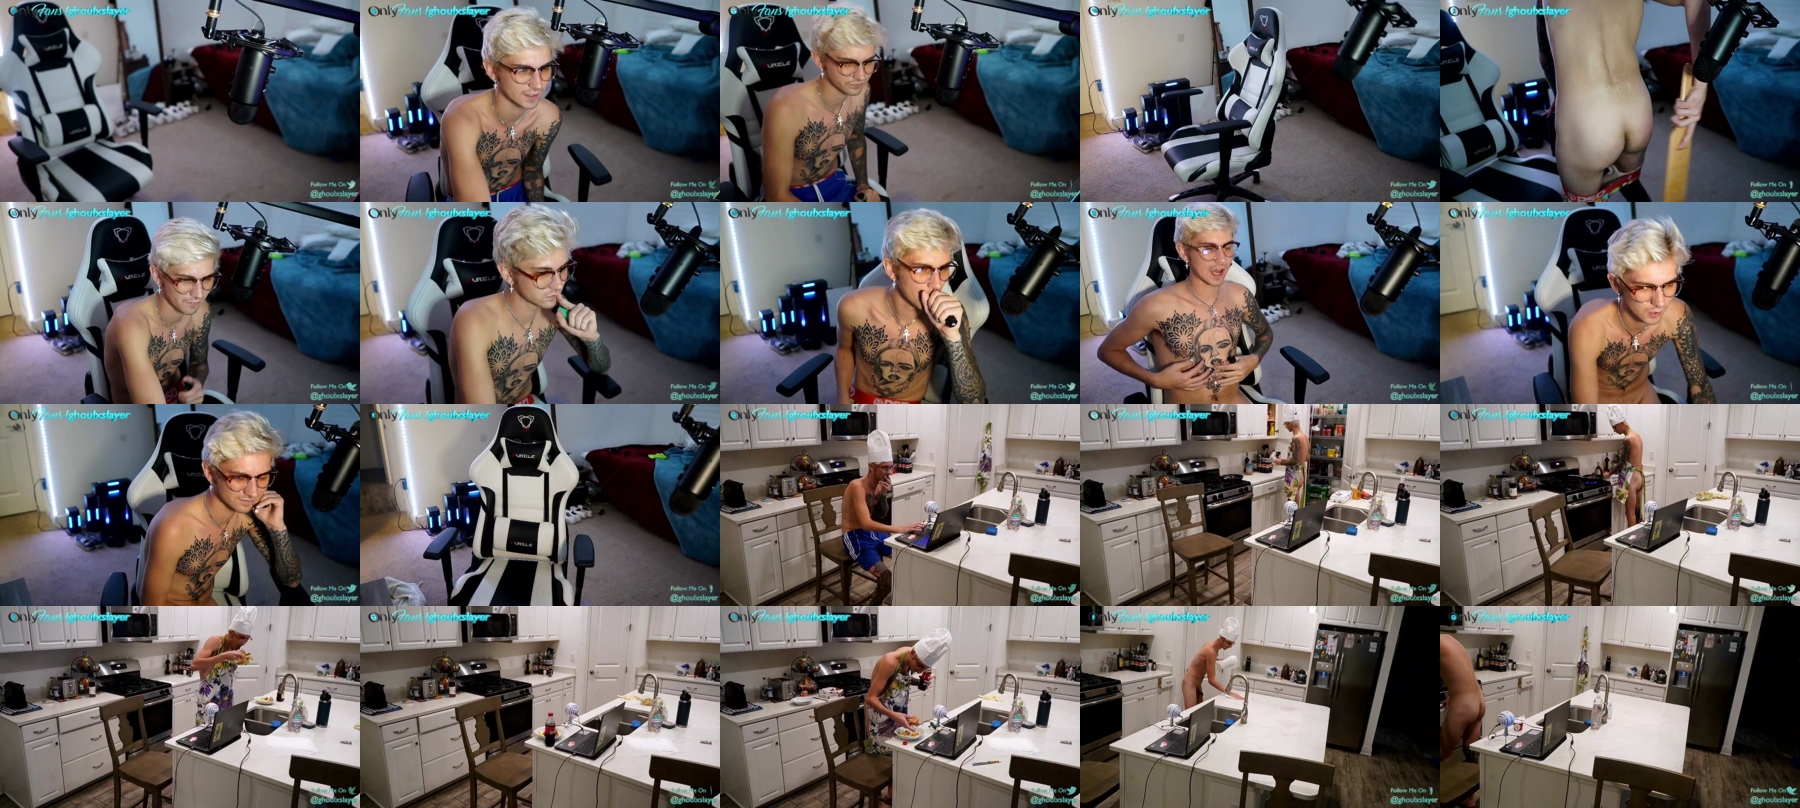 Frostylink  29-07-2021 Male Webcam